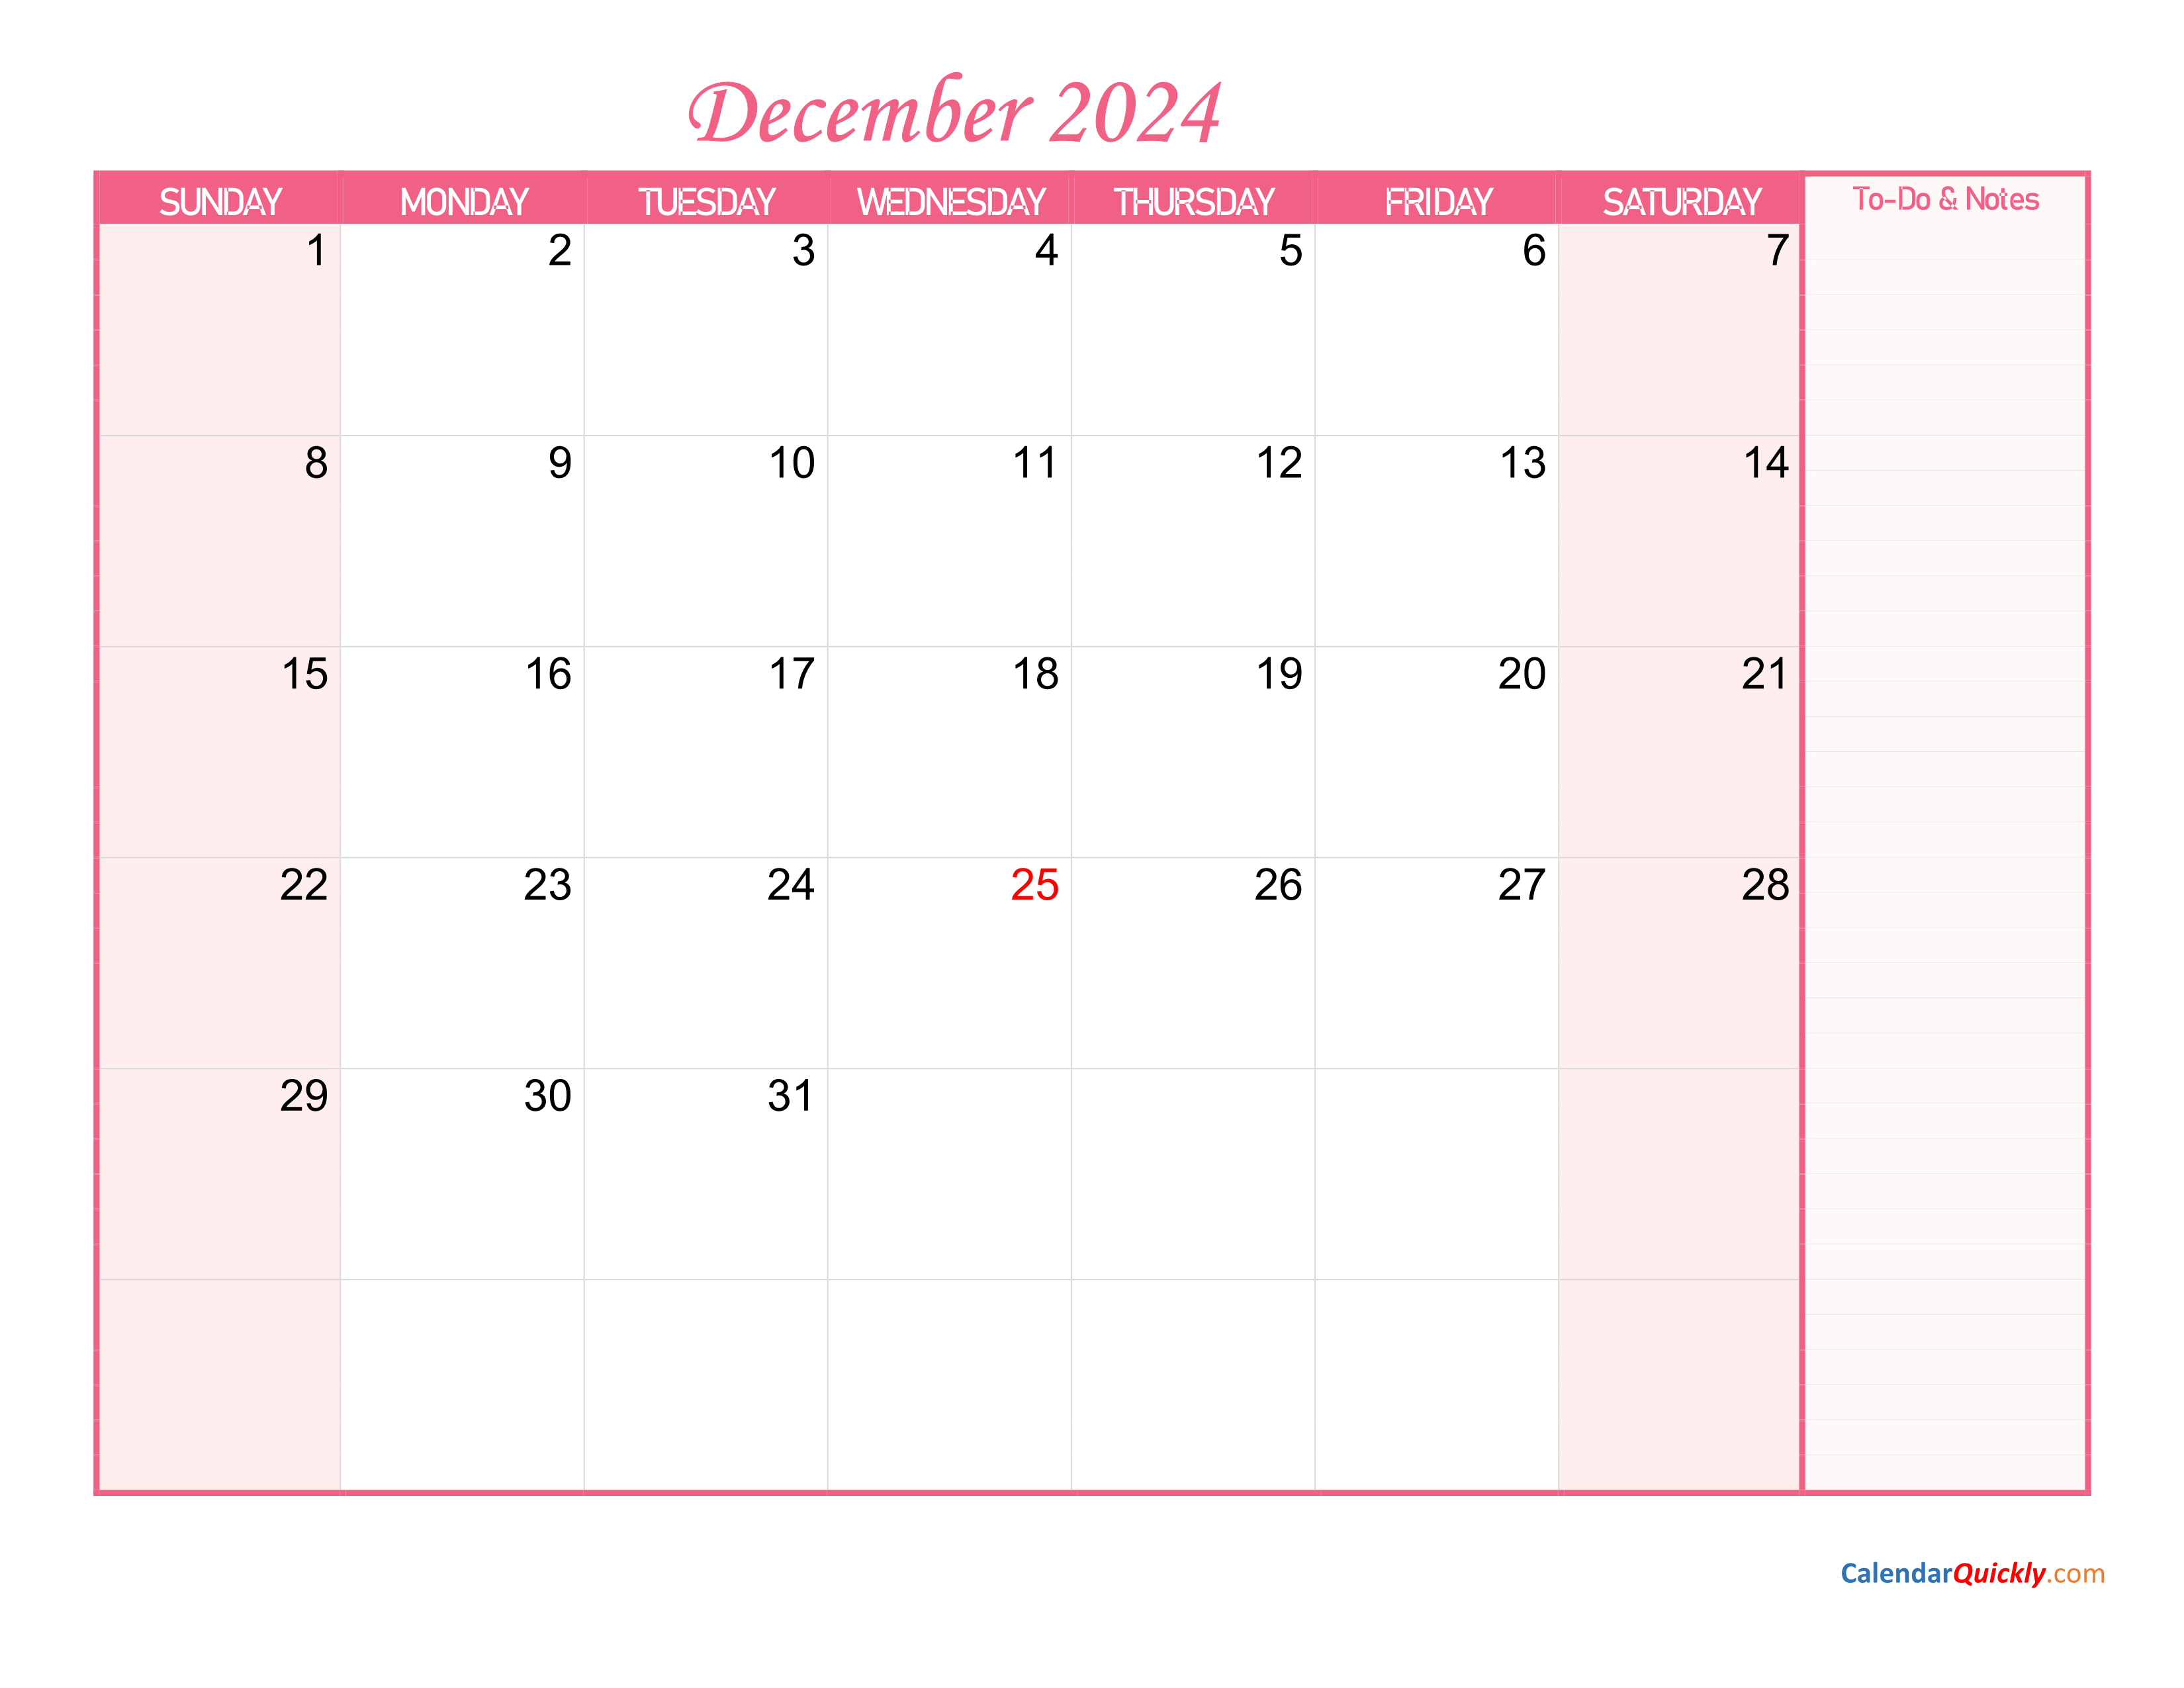 December Calendar 2024 with Notes Calendar Quickly